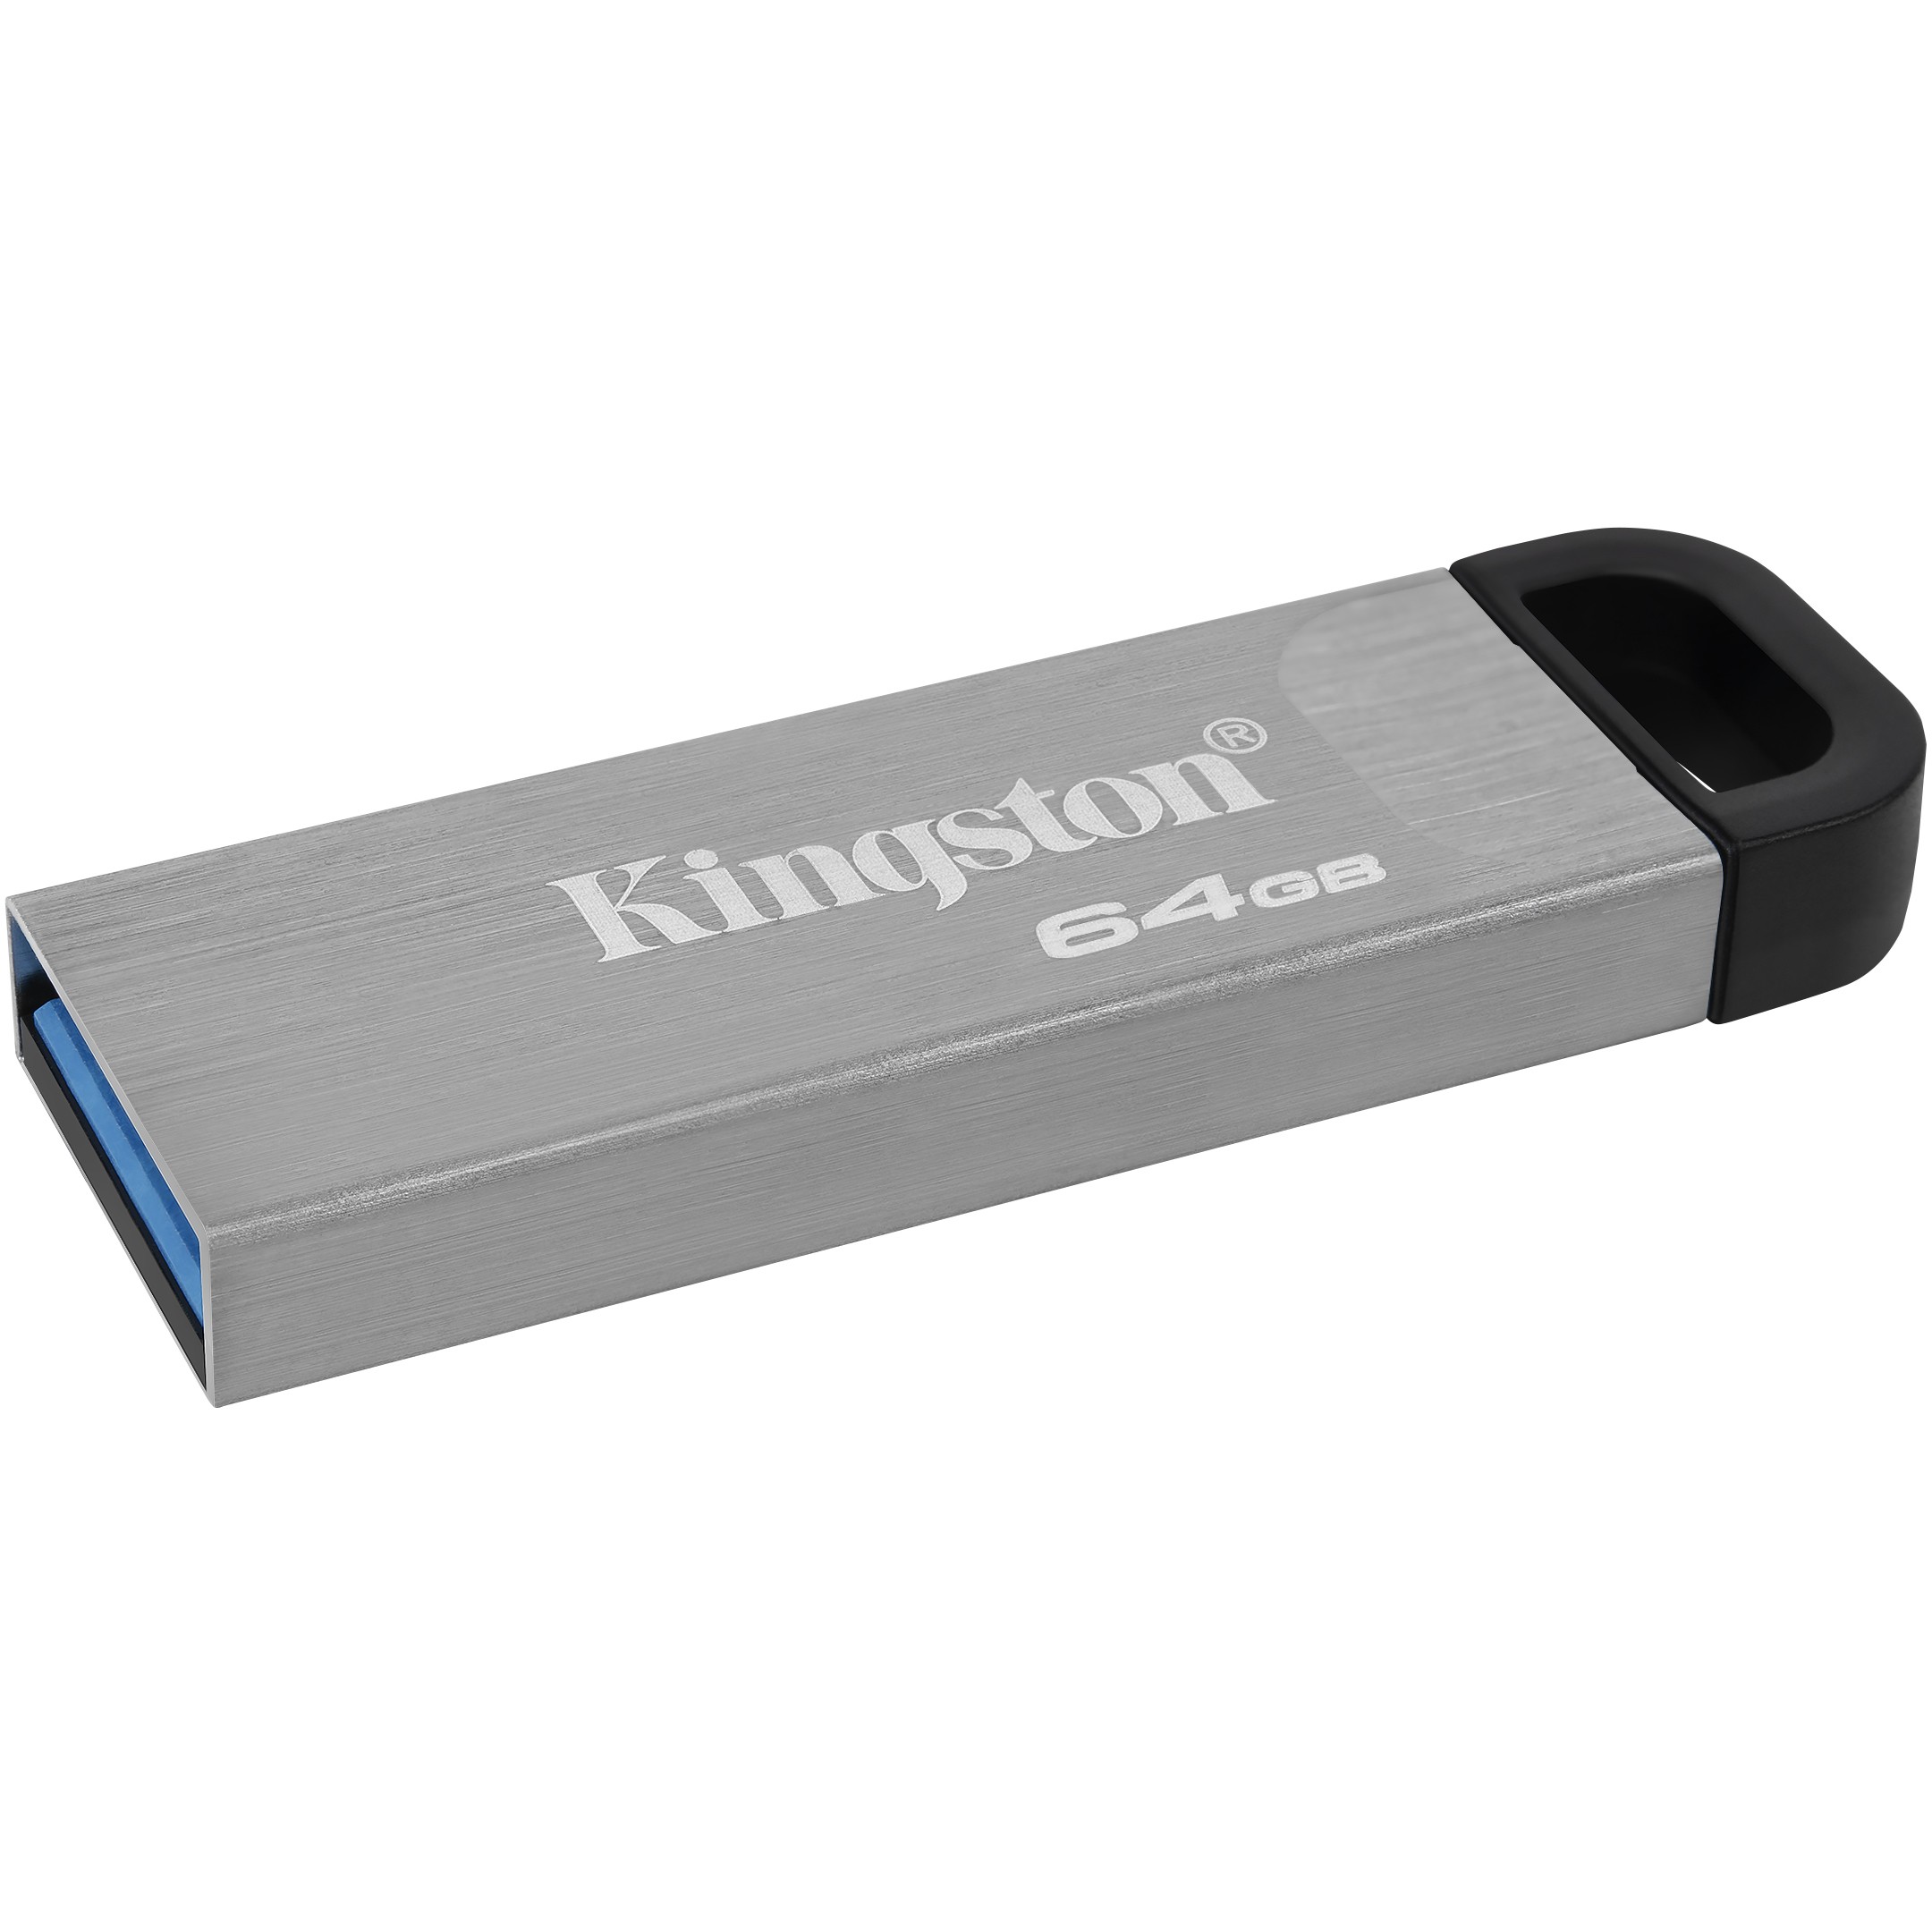 Kingston DTKN/64GB, USB Sticks, Kingston Technology USB  (BILD3)